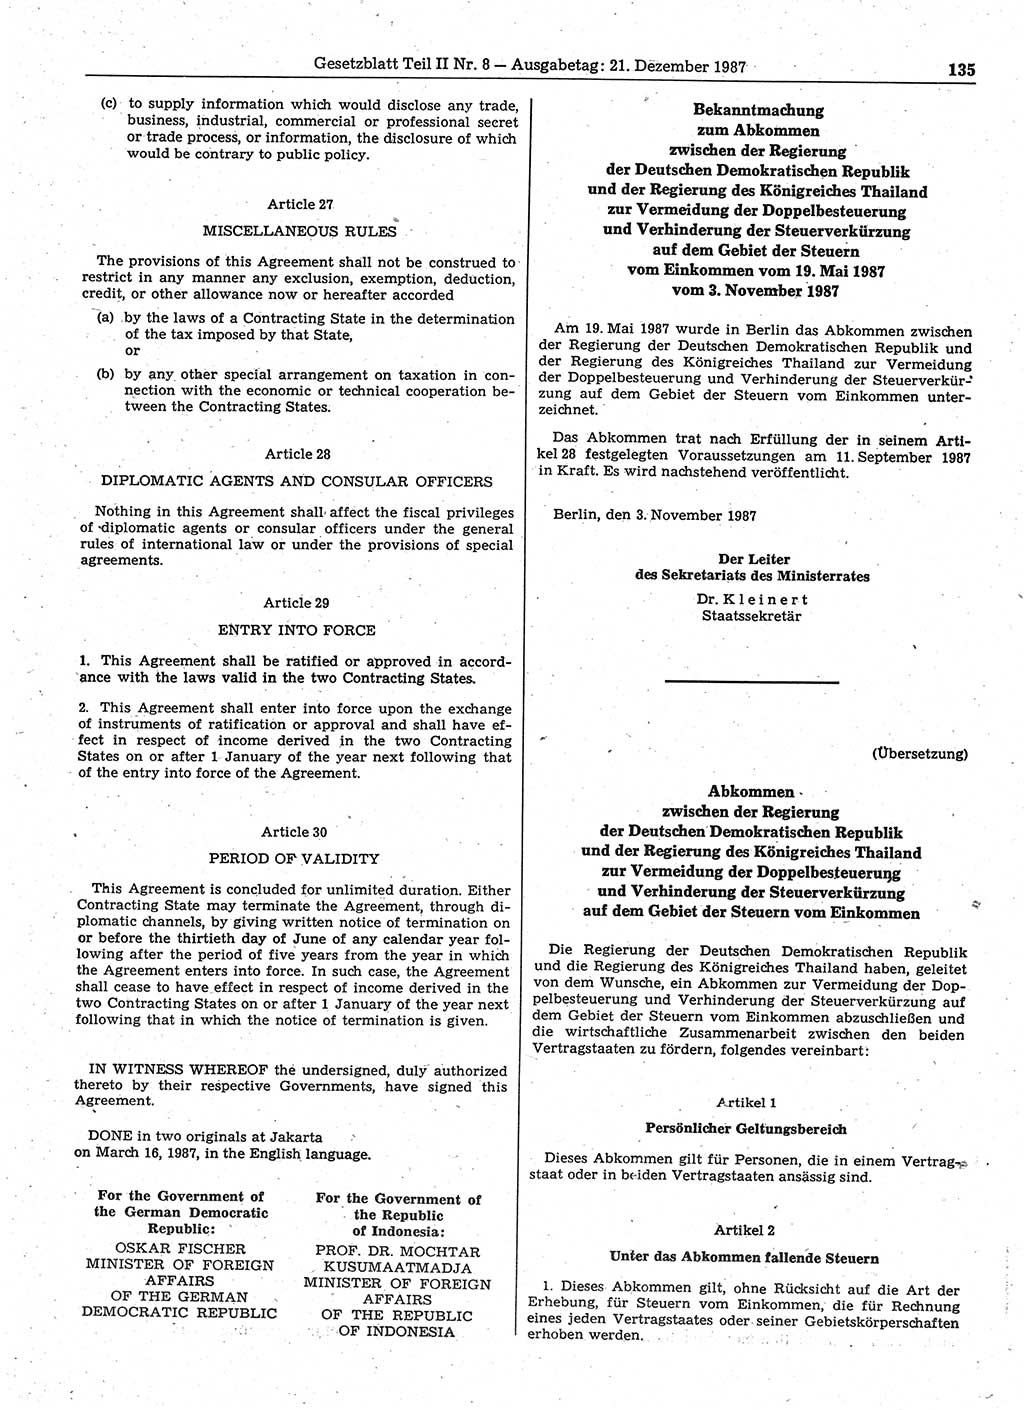 Gesetzblatt (GBl.) der Deutschen Demokratischen Republik (DDR) Teil ⅠⅠ 1987, Seite 135 (GBl. DDR ⅠⅠ 1987, S. 135)